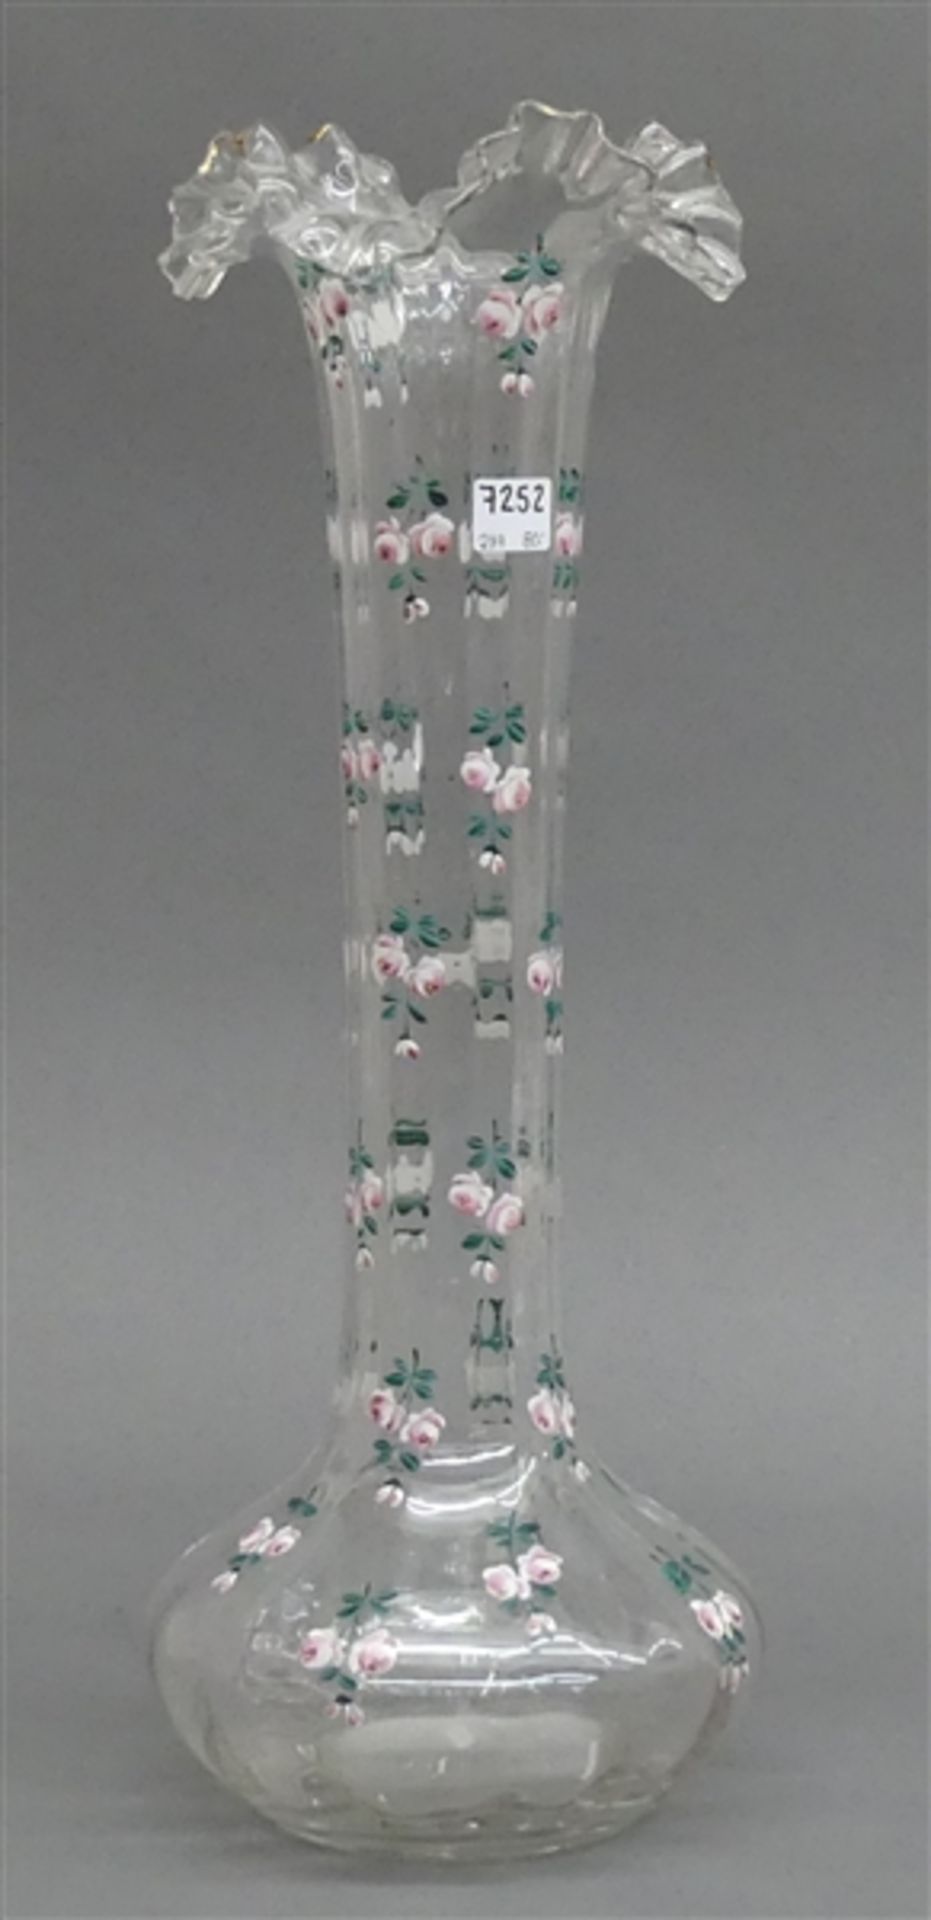 Ziervase, 19. Jh.farbloses Glas, Emailmalerei, "Rosen", Wellrand, beschliffener Abriss, h 44 cm,